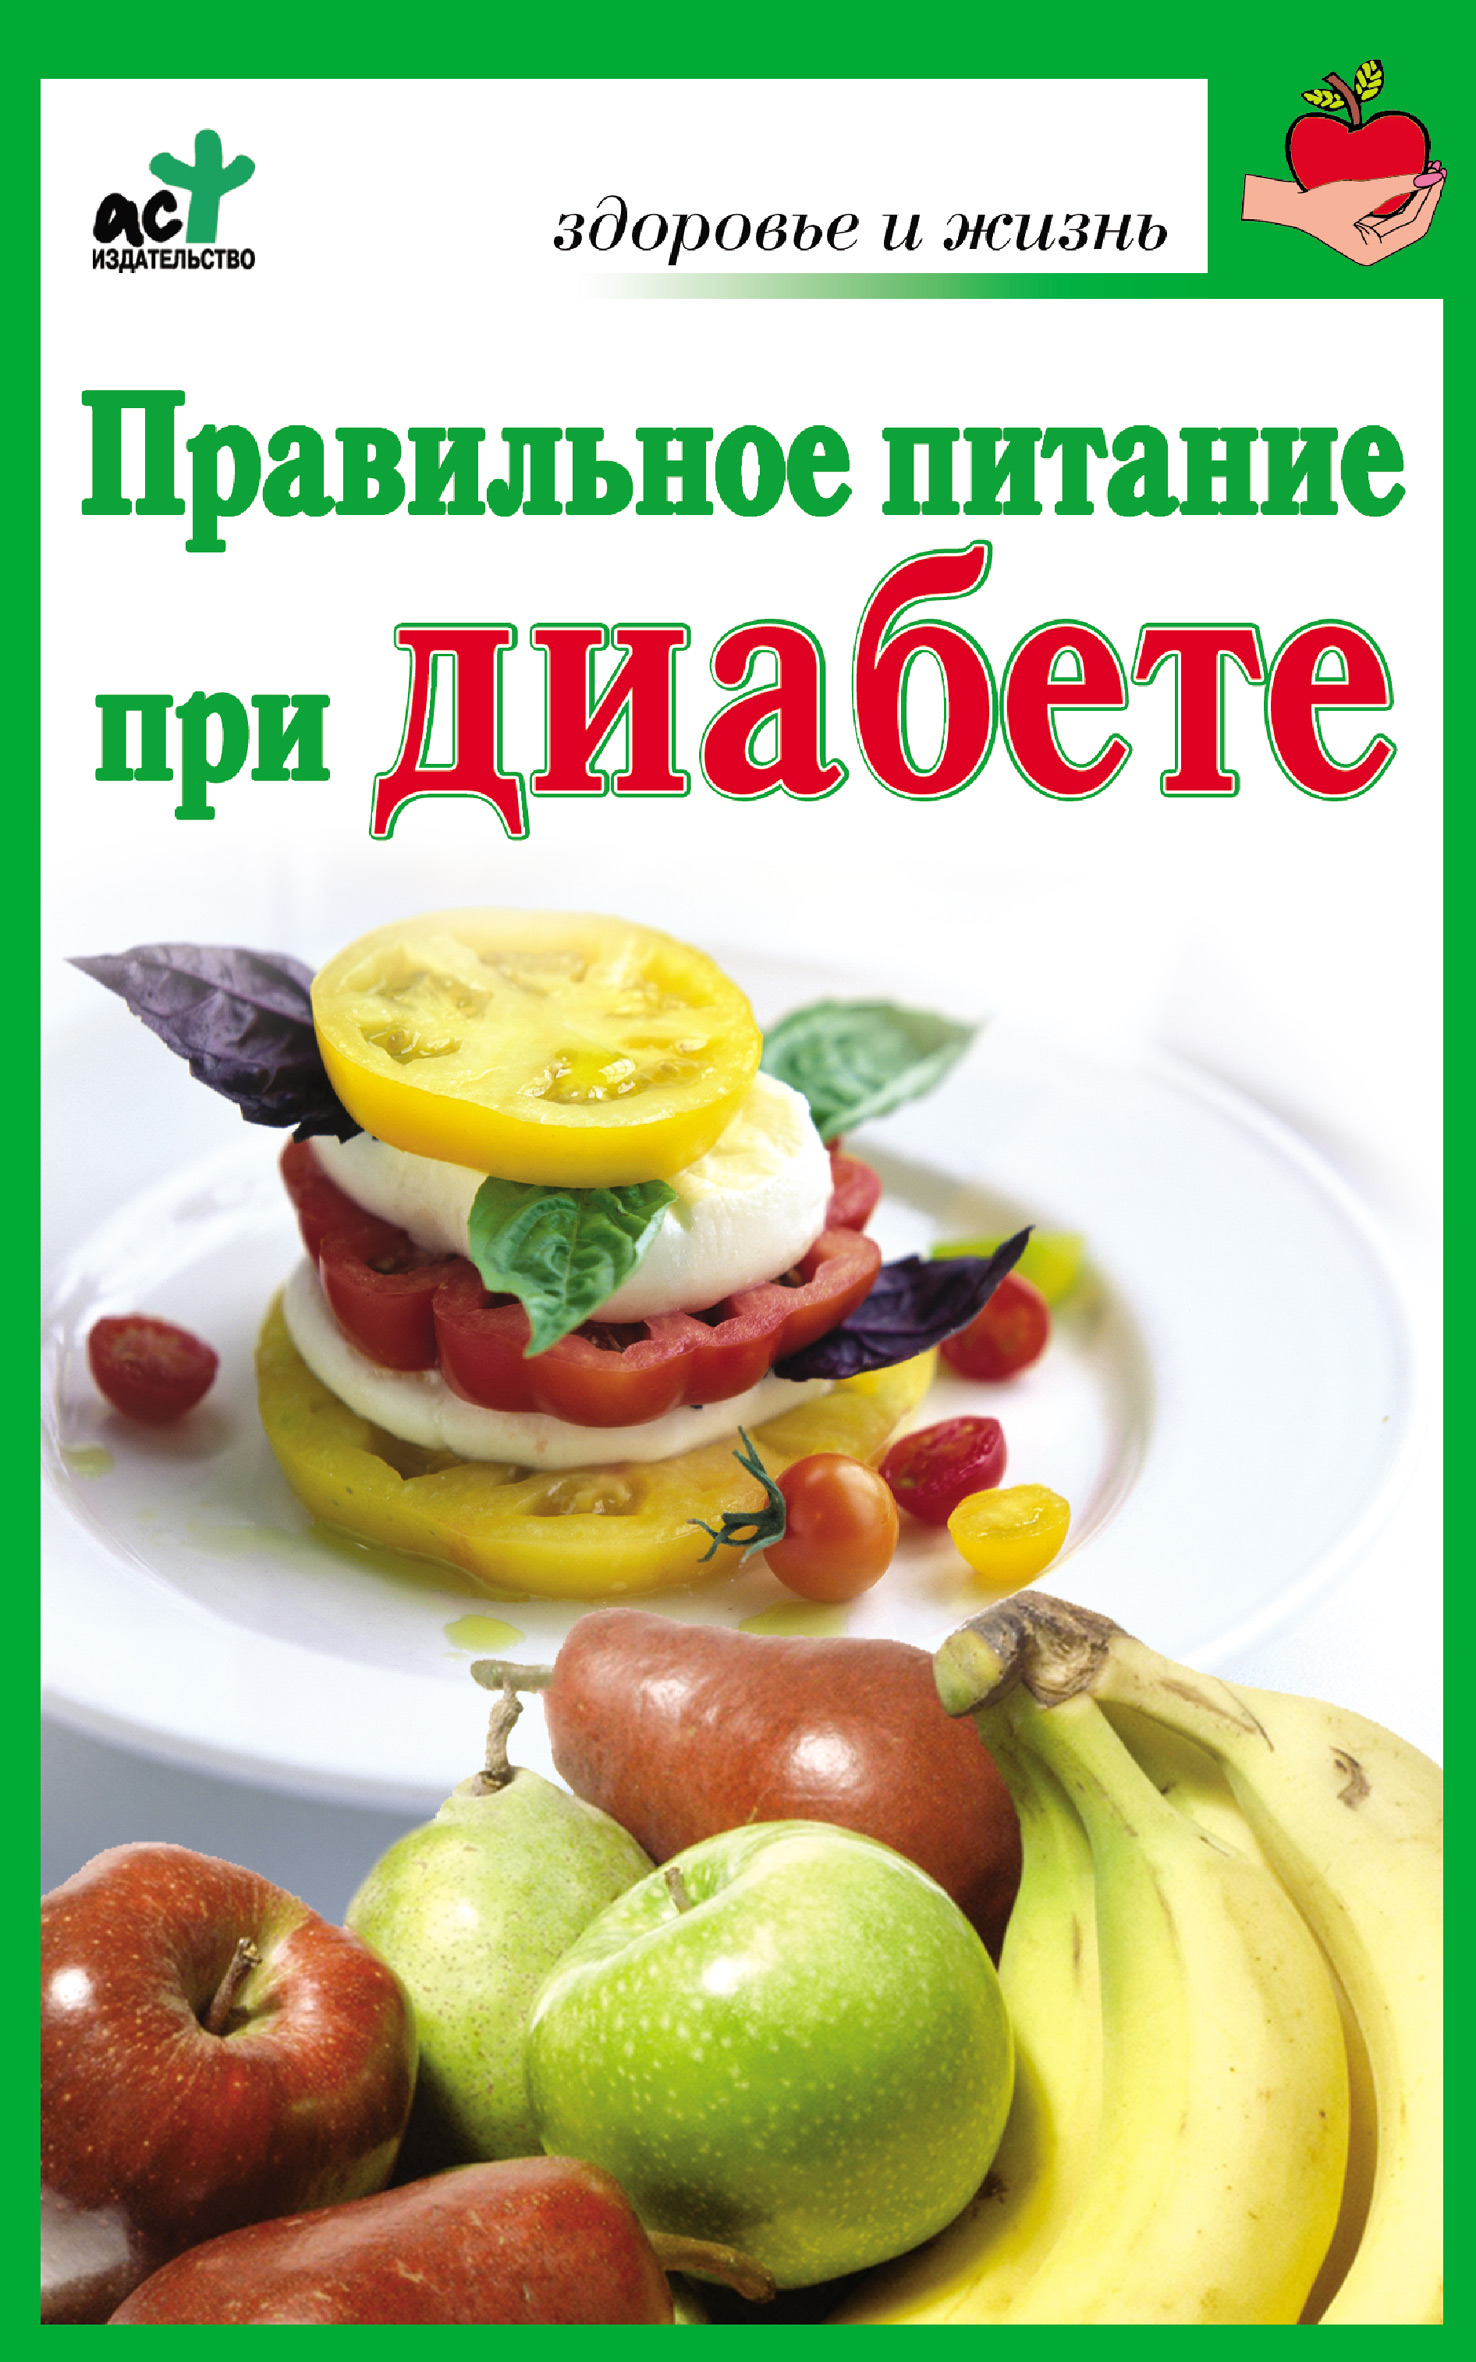 Книга Правильное питание при диабете из серии , созданная Ирина Милюкова, может относится к жанру Здоровье, Кулинария. Стоимость электронной книги Правильное питание при диабете с идентификатором 5809792 составляет 14.99 руб.